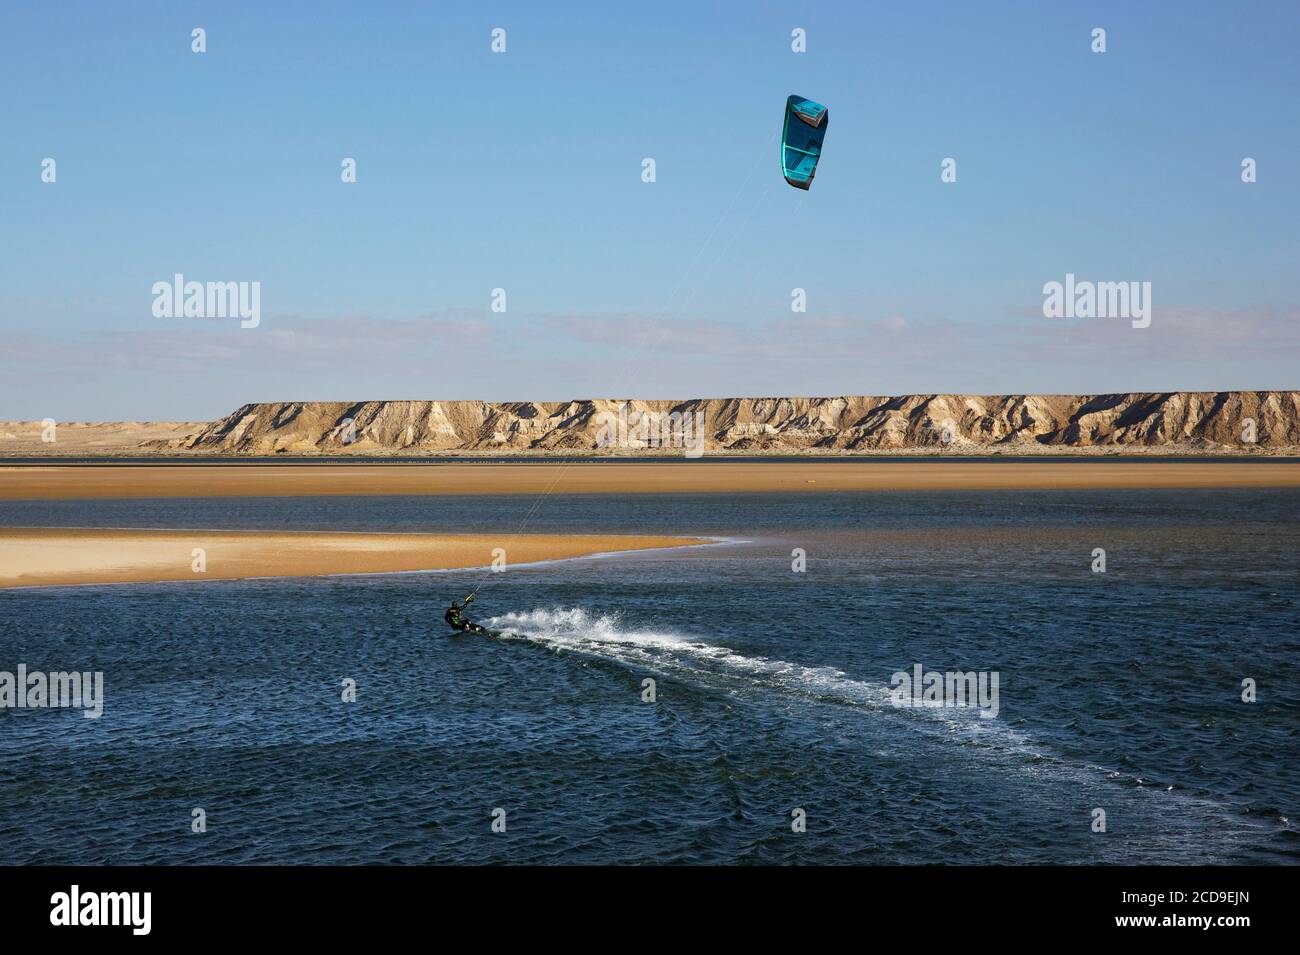 Maroc, Sahara occidental, Dakhla, kitesurfer sur le lagon, entre la dune blanche et les montagnes désertiques Banque D'Images